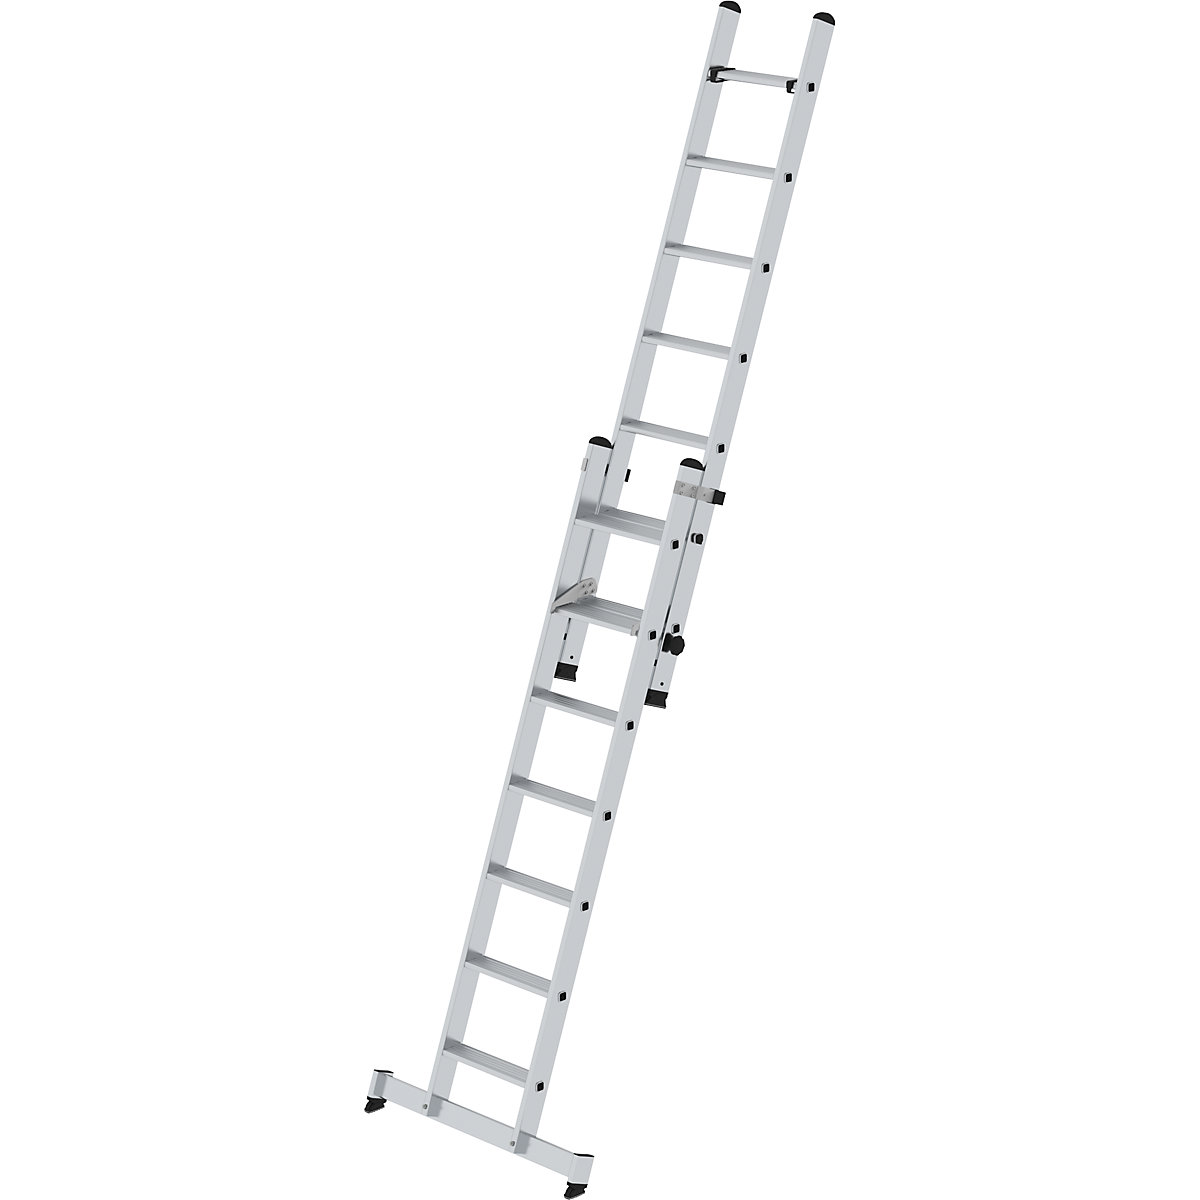 Extending step ladder, 2-part – MUNK